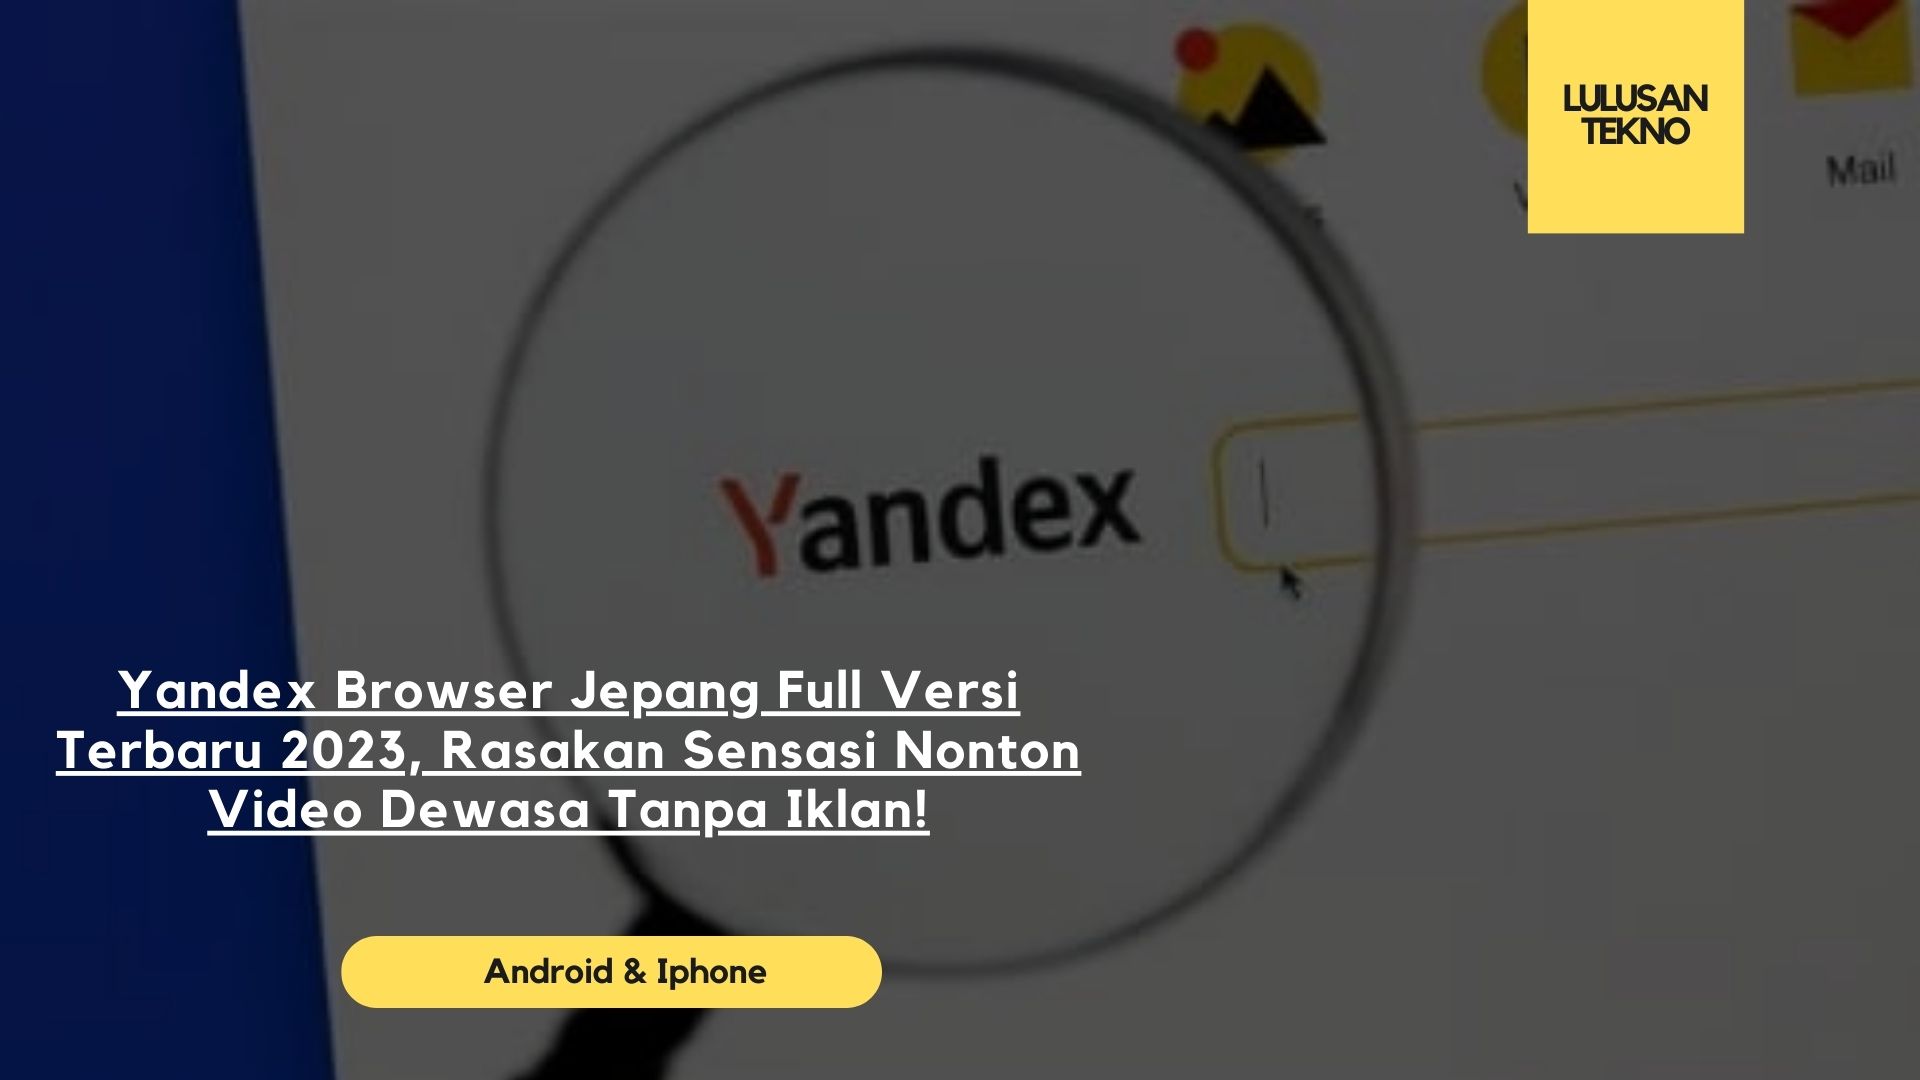 Yandex Browser Jepang Full Versi Terbaru 2023, Rasakan Sensasi Nonton Video Dewasa Tanpa Iklan!